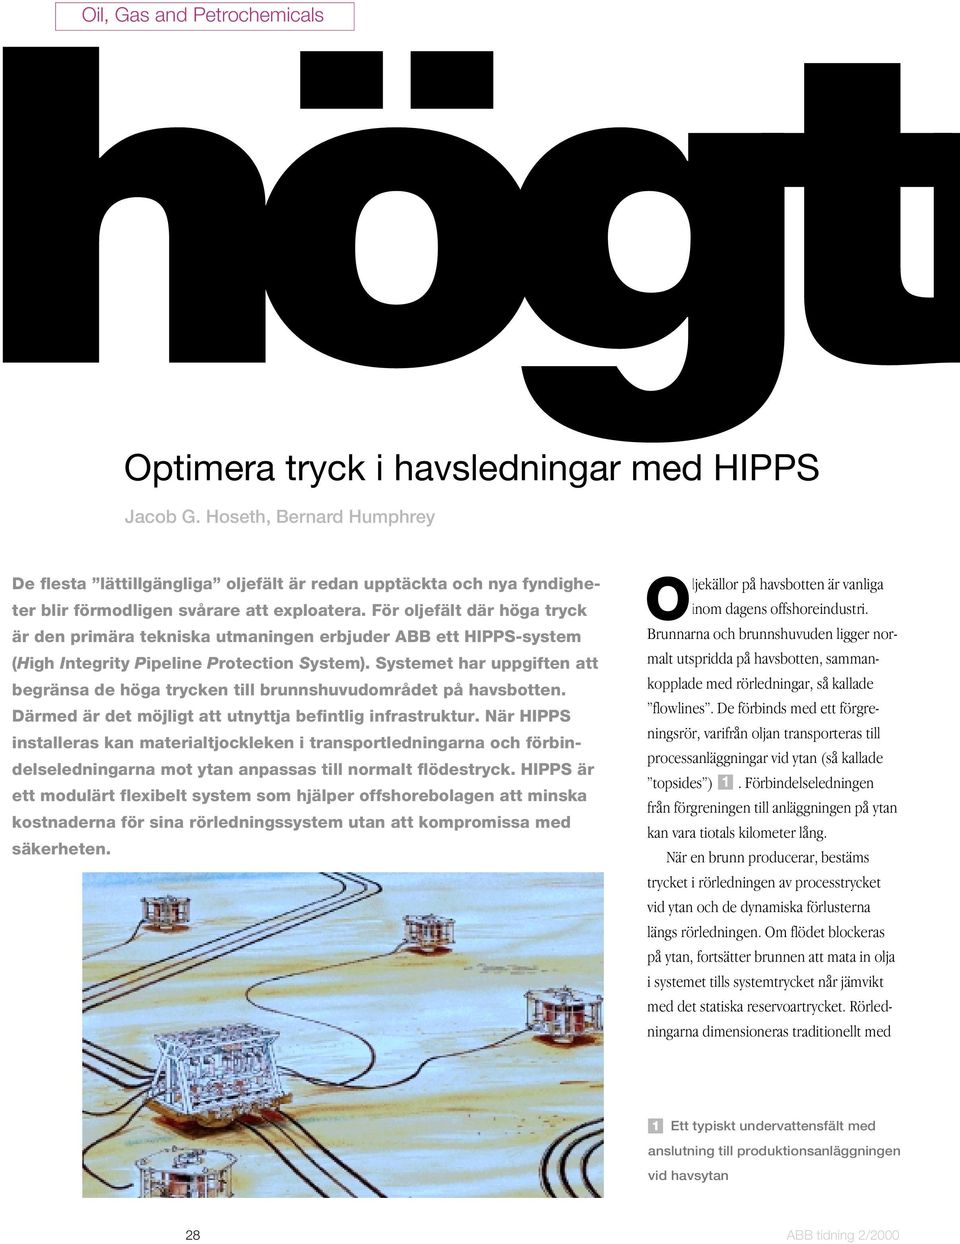 För oljefält där höga tryck är den primära tekniska utmaningen erbjuder ABB ett HIPPS-system (High Integrity Pipeline Protection System).